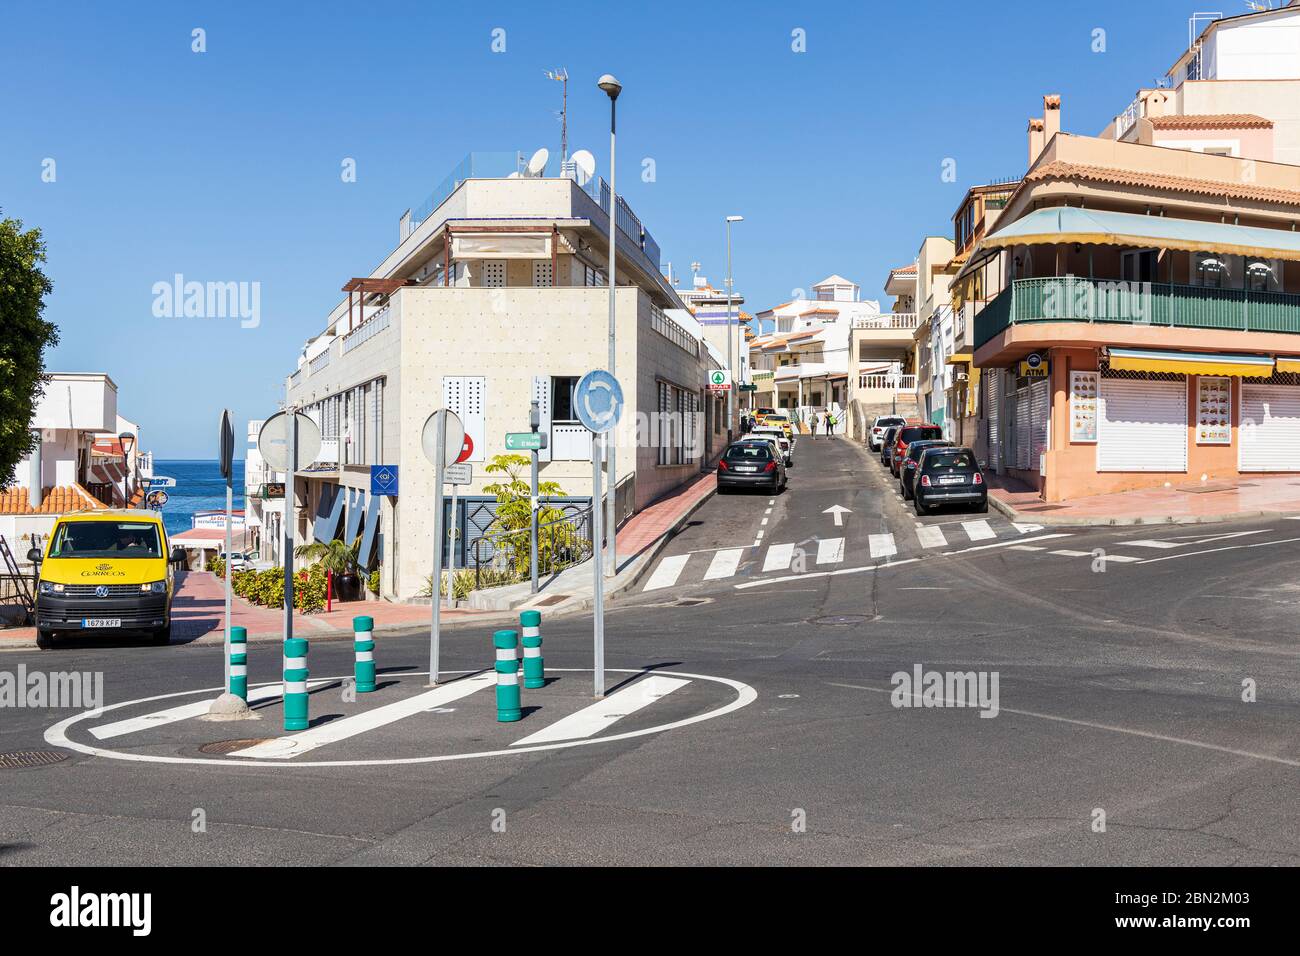 Calles vacías y desiertas en el pueblo de la Caleta durante el cierre covid 19, Costa Adeje, Tenerife, Islas Canarias, España Foto de stock